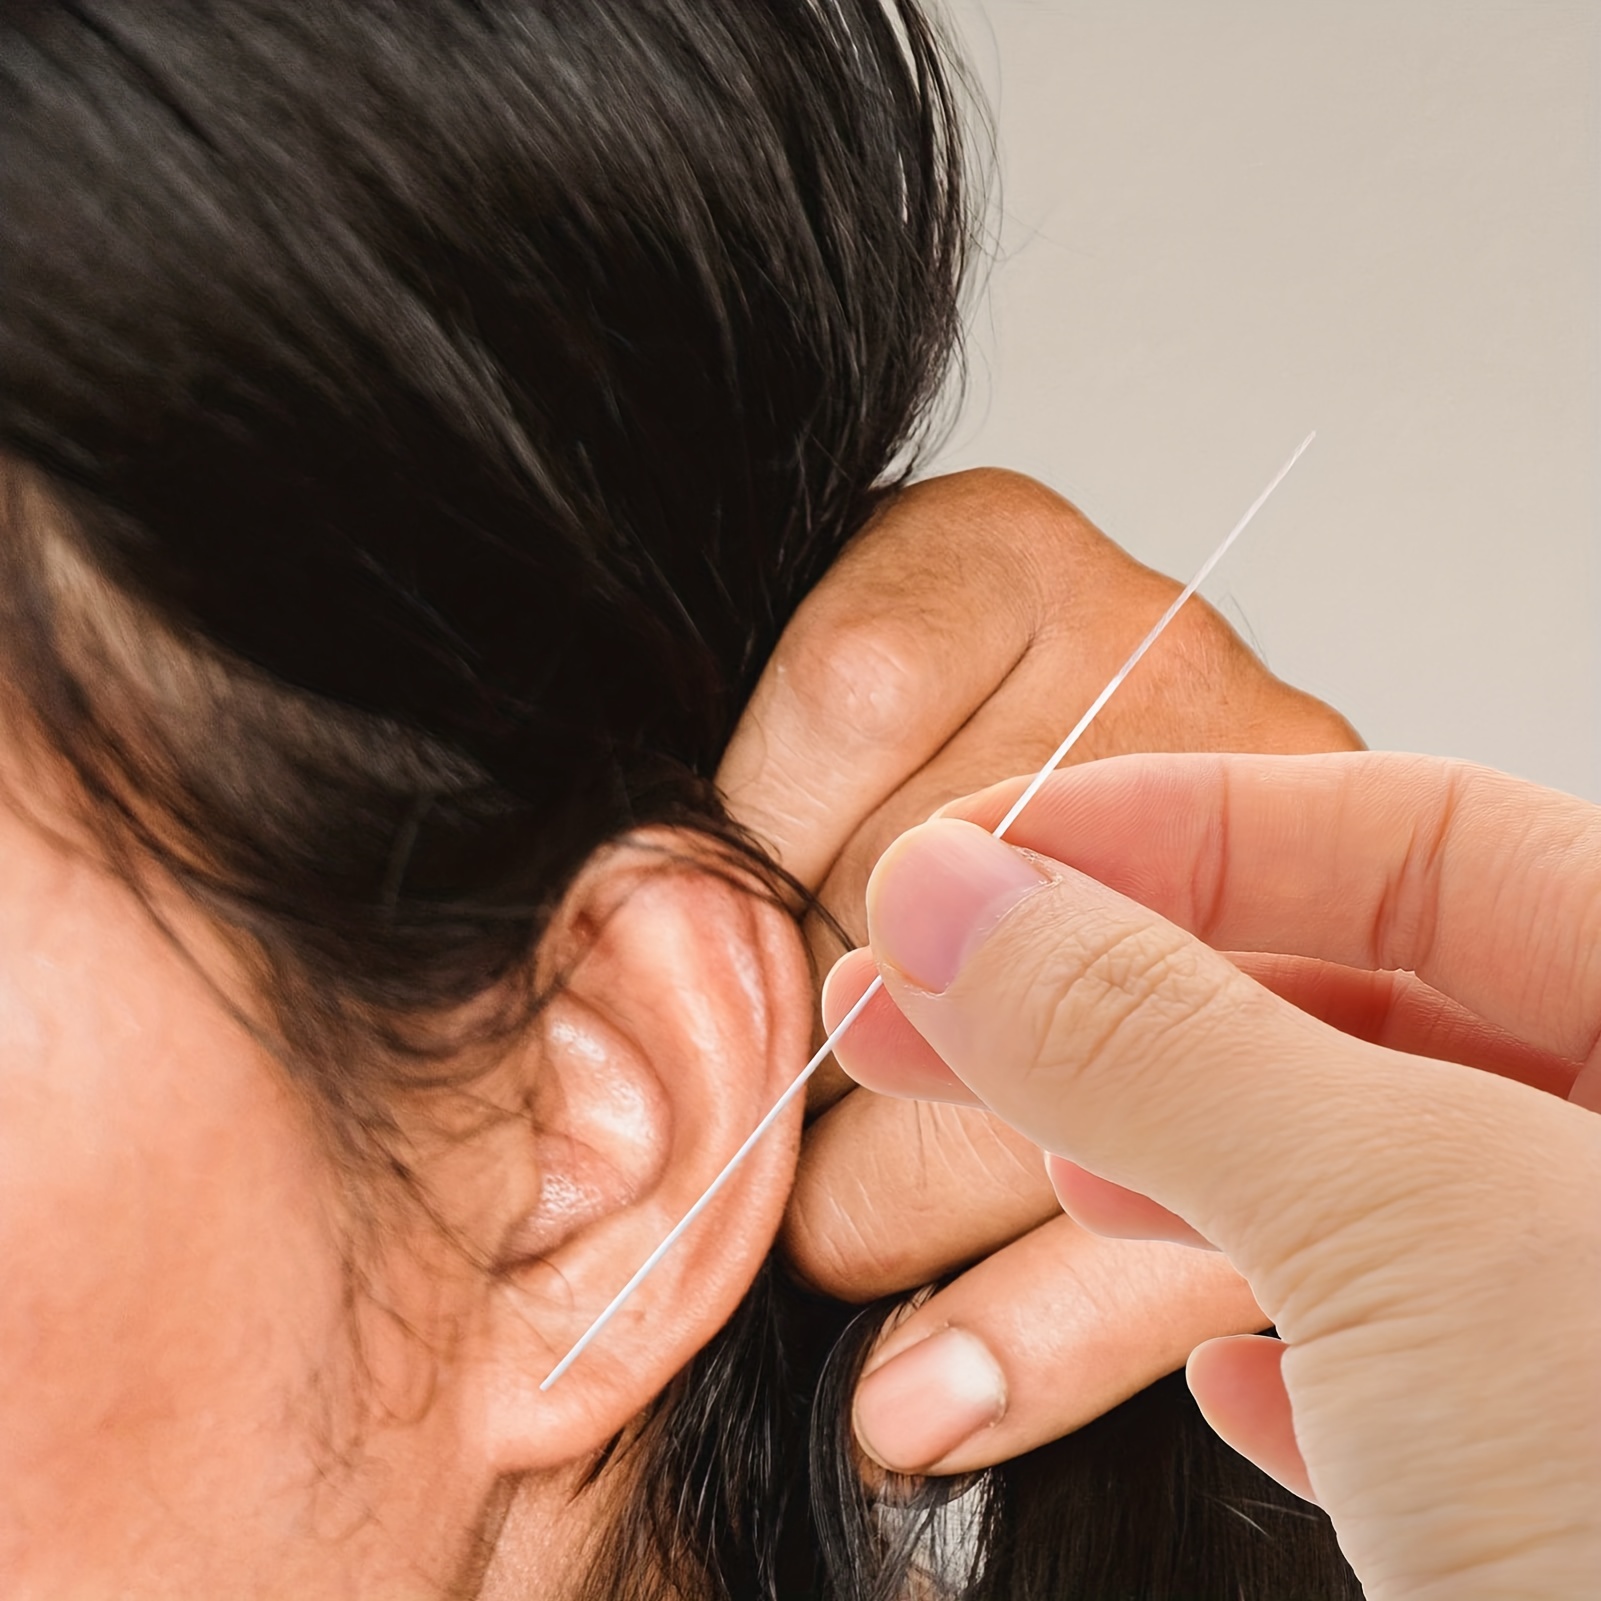 Earring Cleaner for Pierced Ears - Earrings Hole Cleaner,Piercing Aftercare  Cleaner Ear Hole Cleaning Lines, Ear Piercing Care Cleaning Tool for Girls  Women 